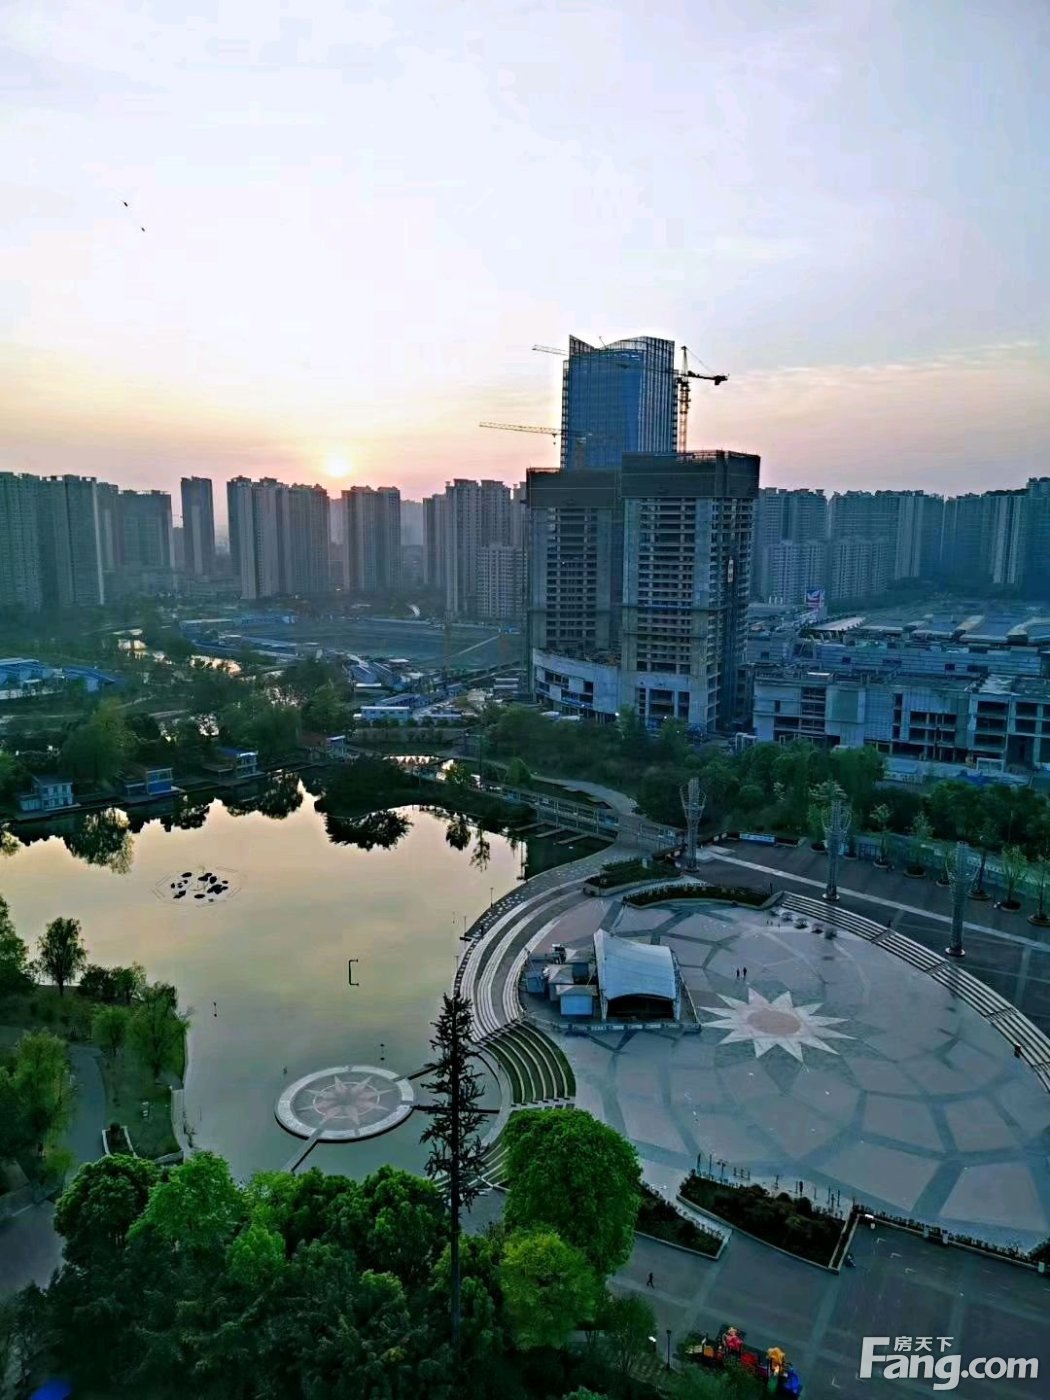 置业顾问文佳林发布了一条珠江悦湖国际的抖房